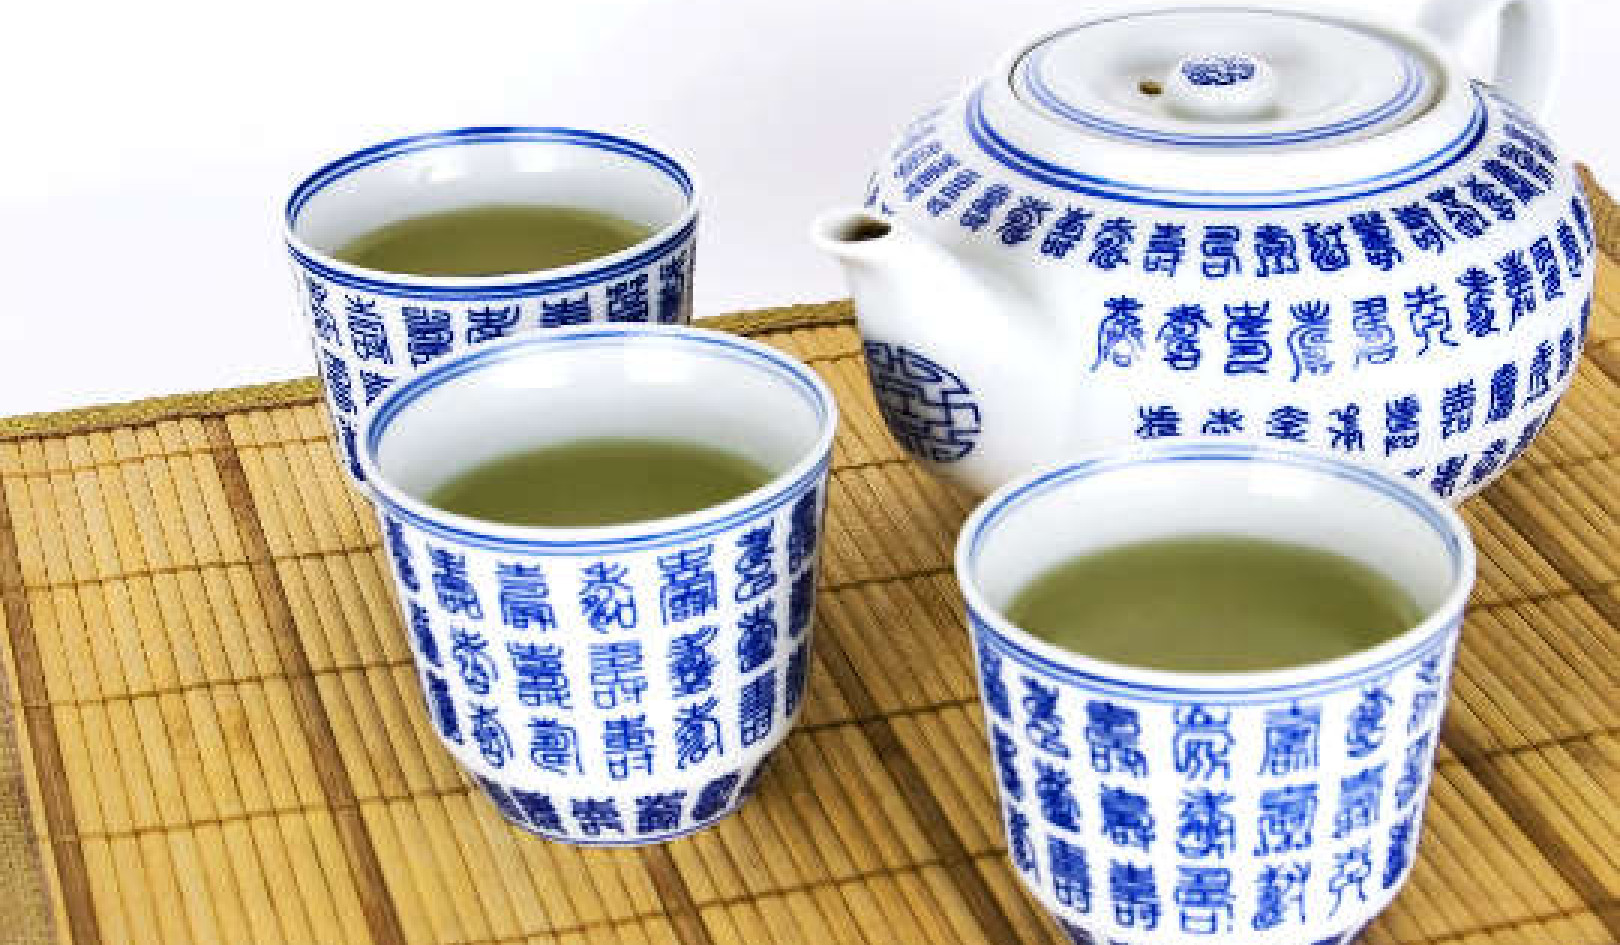 آیا چای سبز برای سلامتی مضر است؟